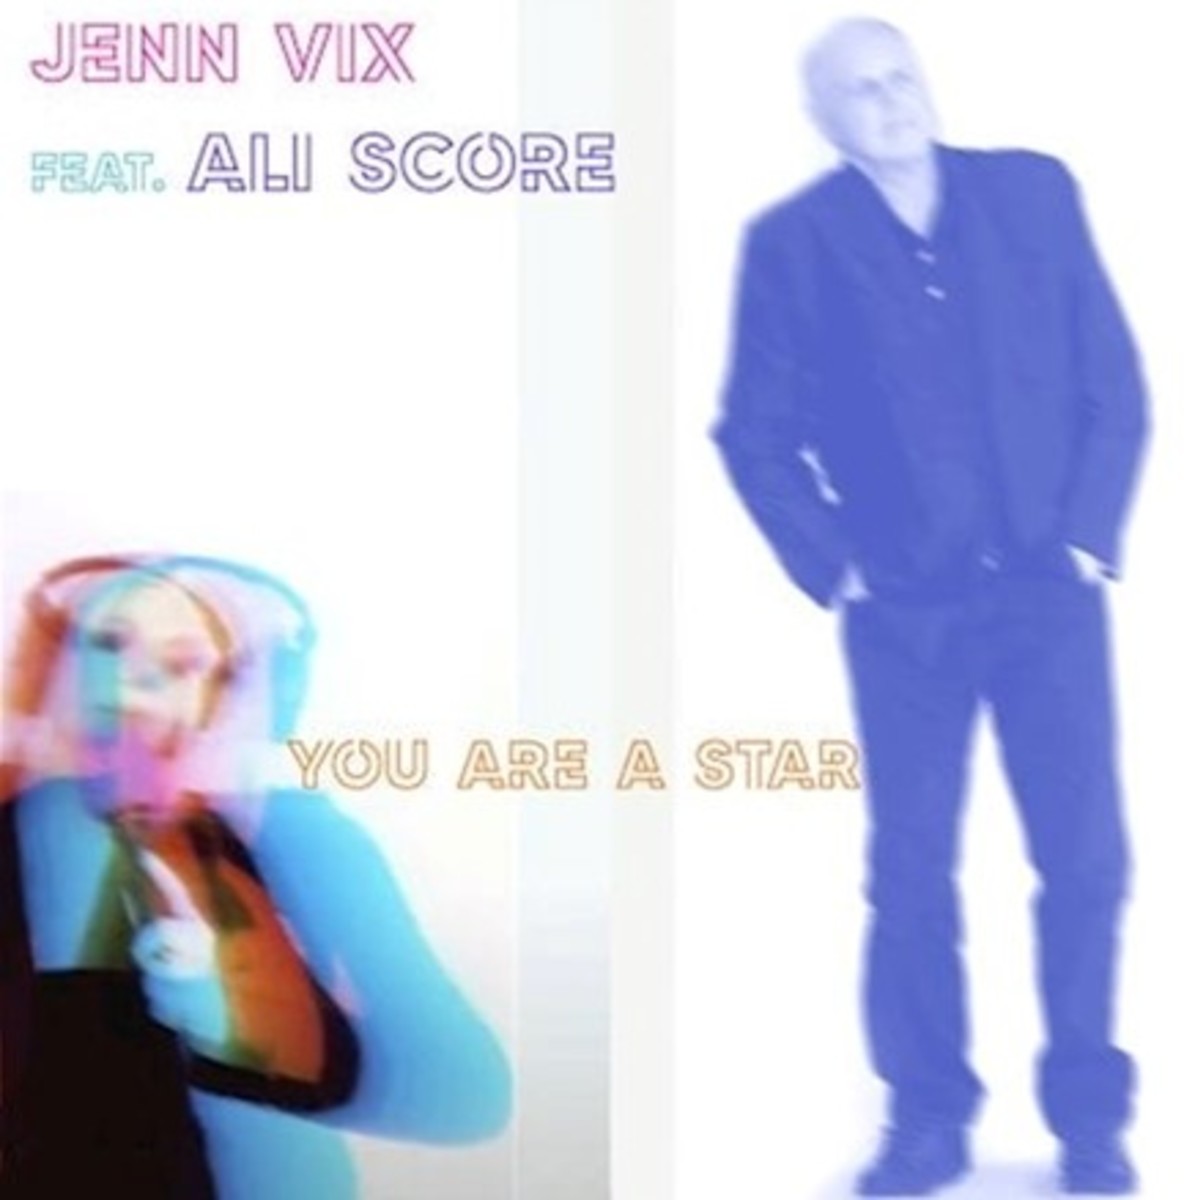 Asia Jenn Vix